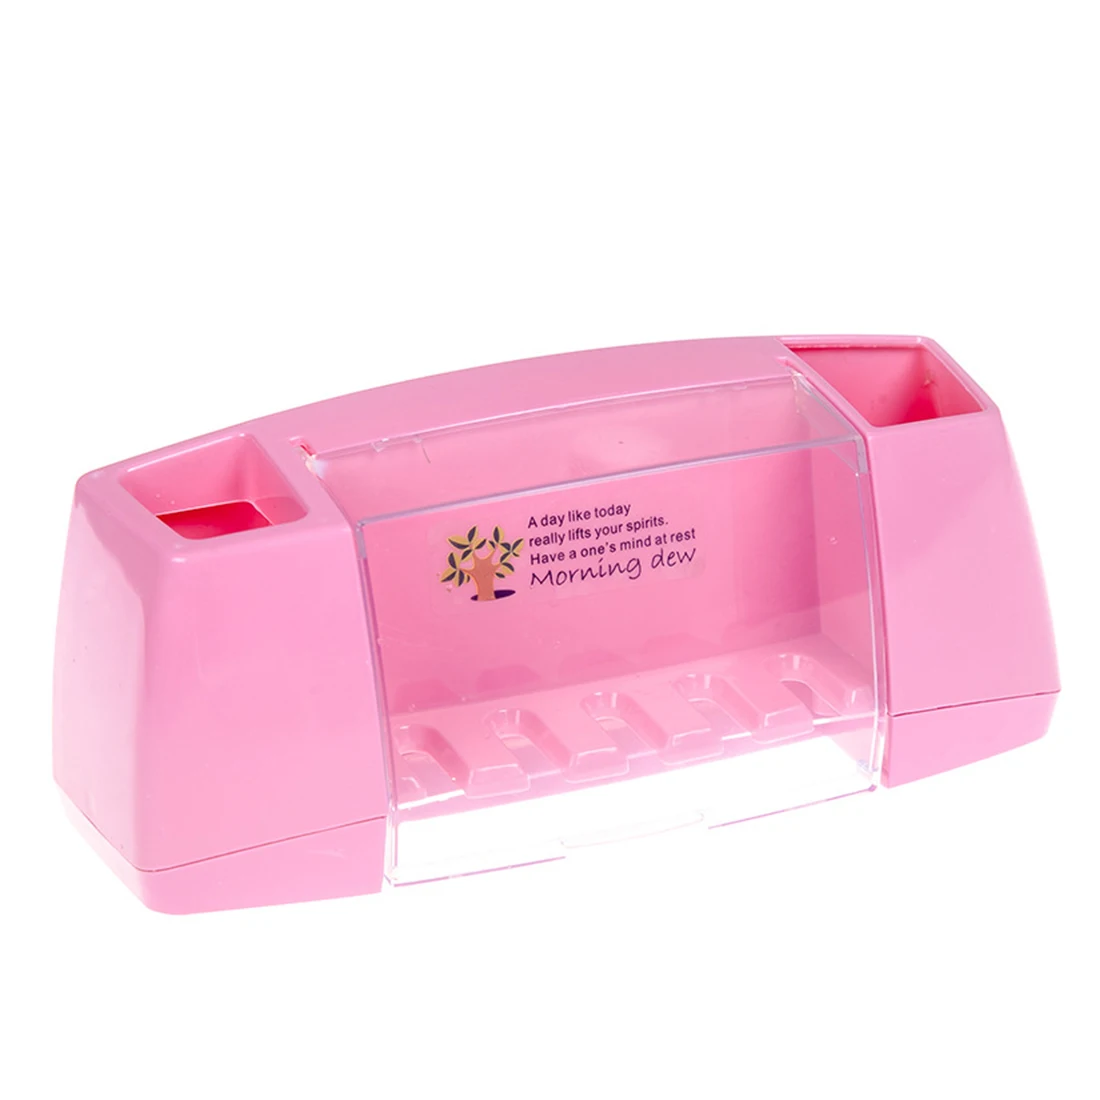 4 цвета, многофункциональная зубная щетка, держатель, коробка для хранения, ванная комната, кухня, семейная настенная подставка, туалетные принадлежности, хранение зубной пасты - Цвет: Розовый